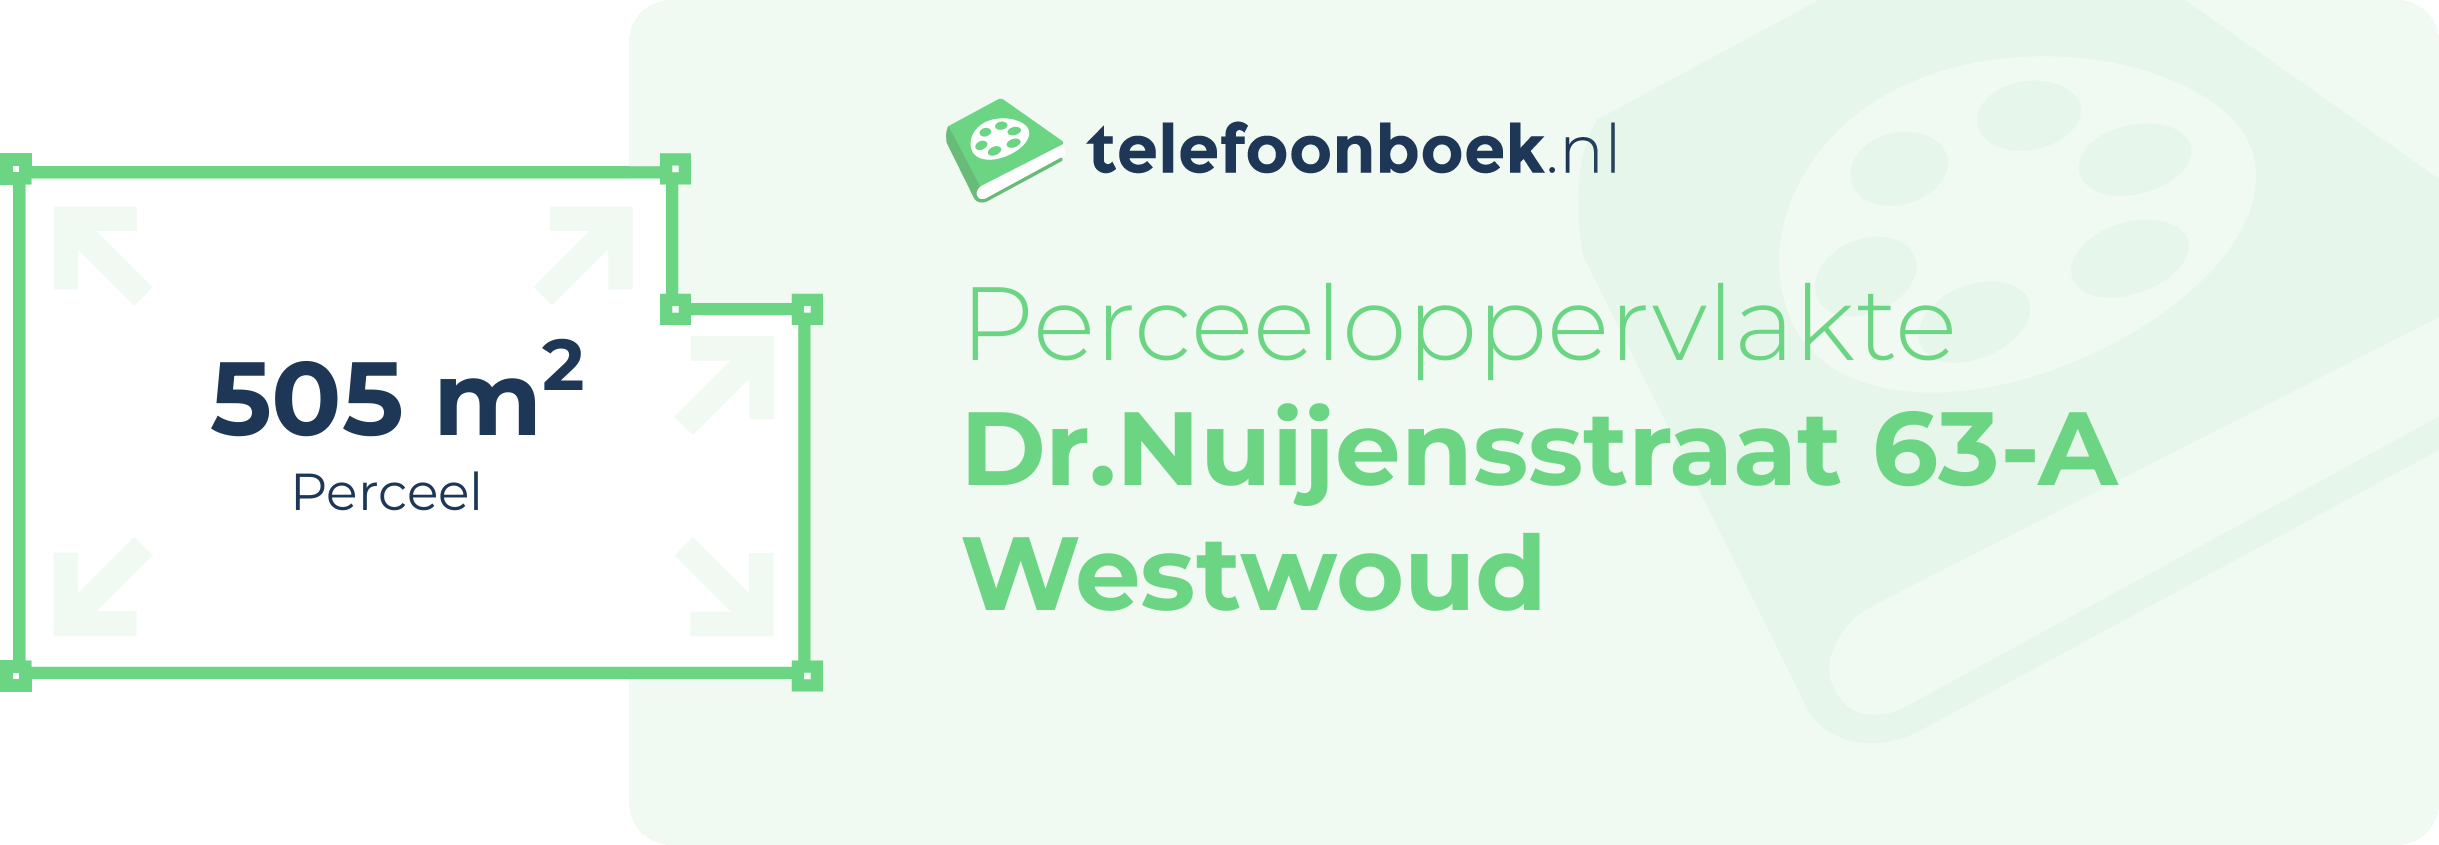 Perceeloppervlakte Dr.Nuijensstraat 63-A Westwoud